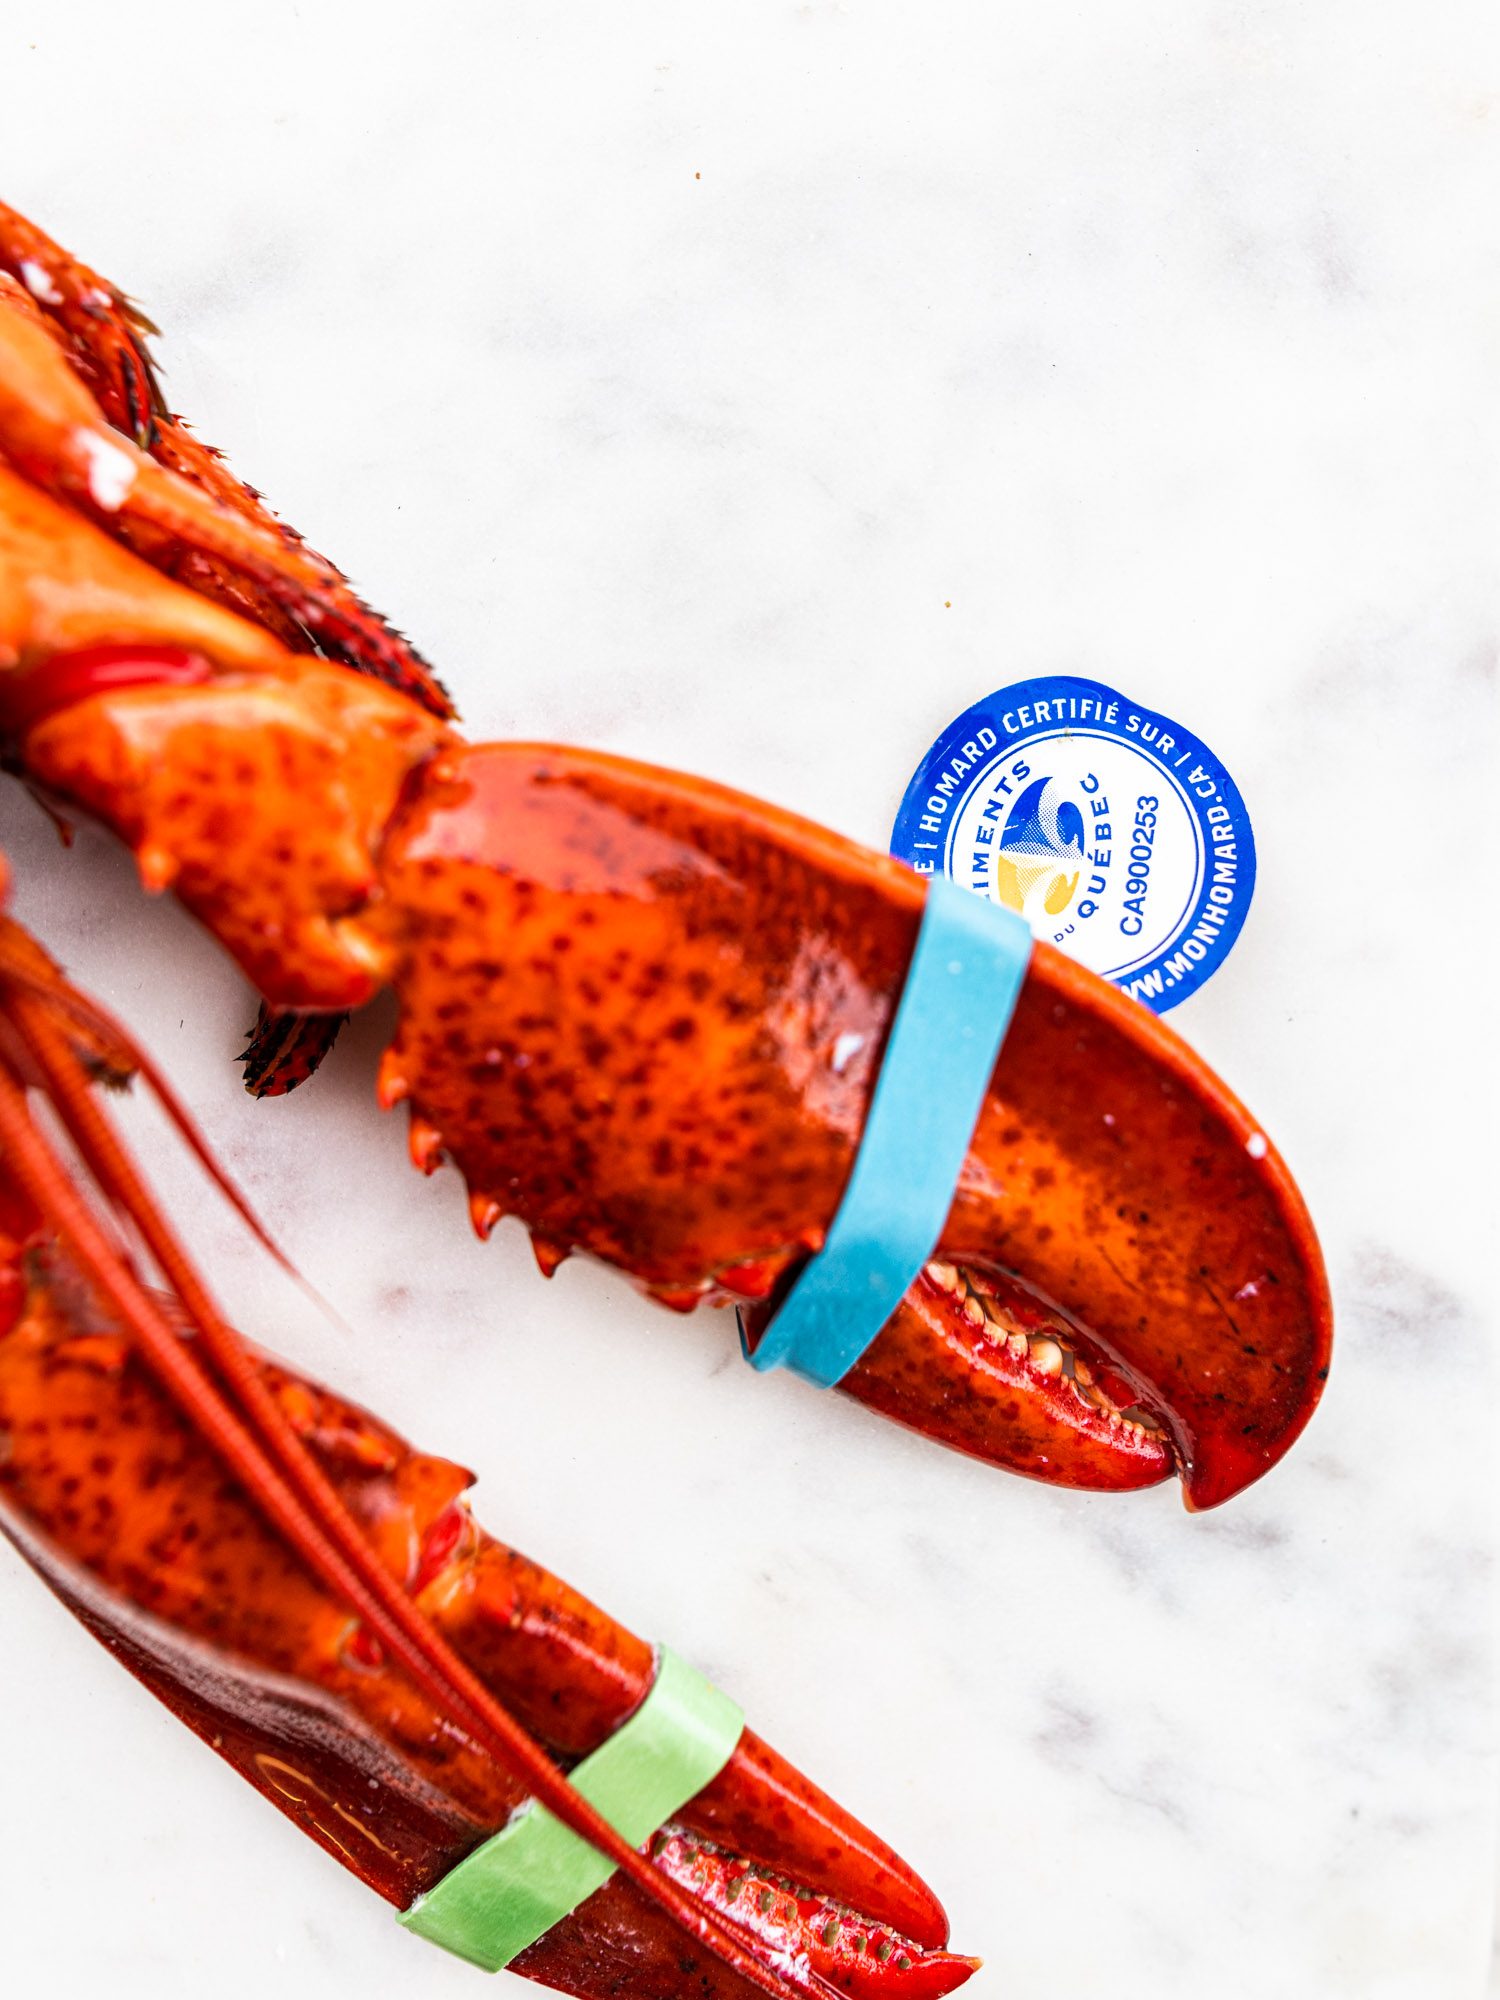 Étiquette du Homard du Québec pour la traçabilité du homard gaspésien